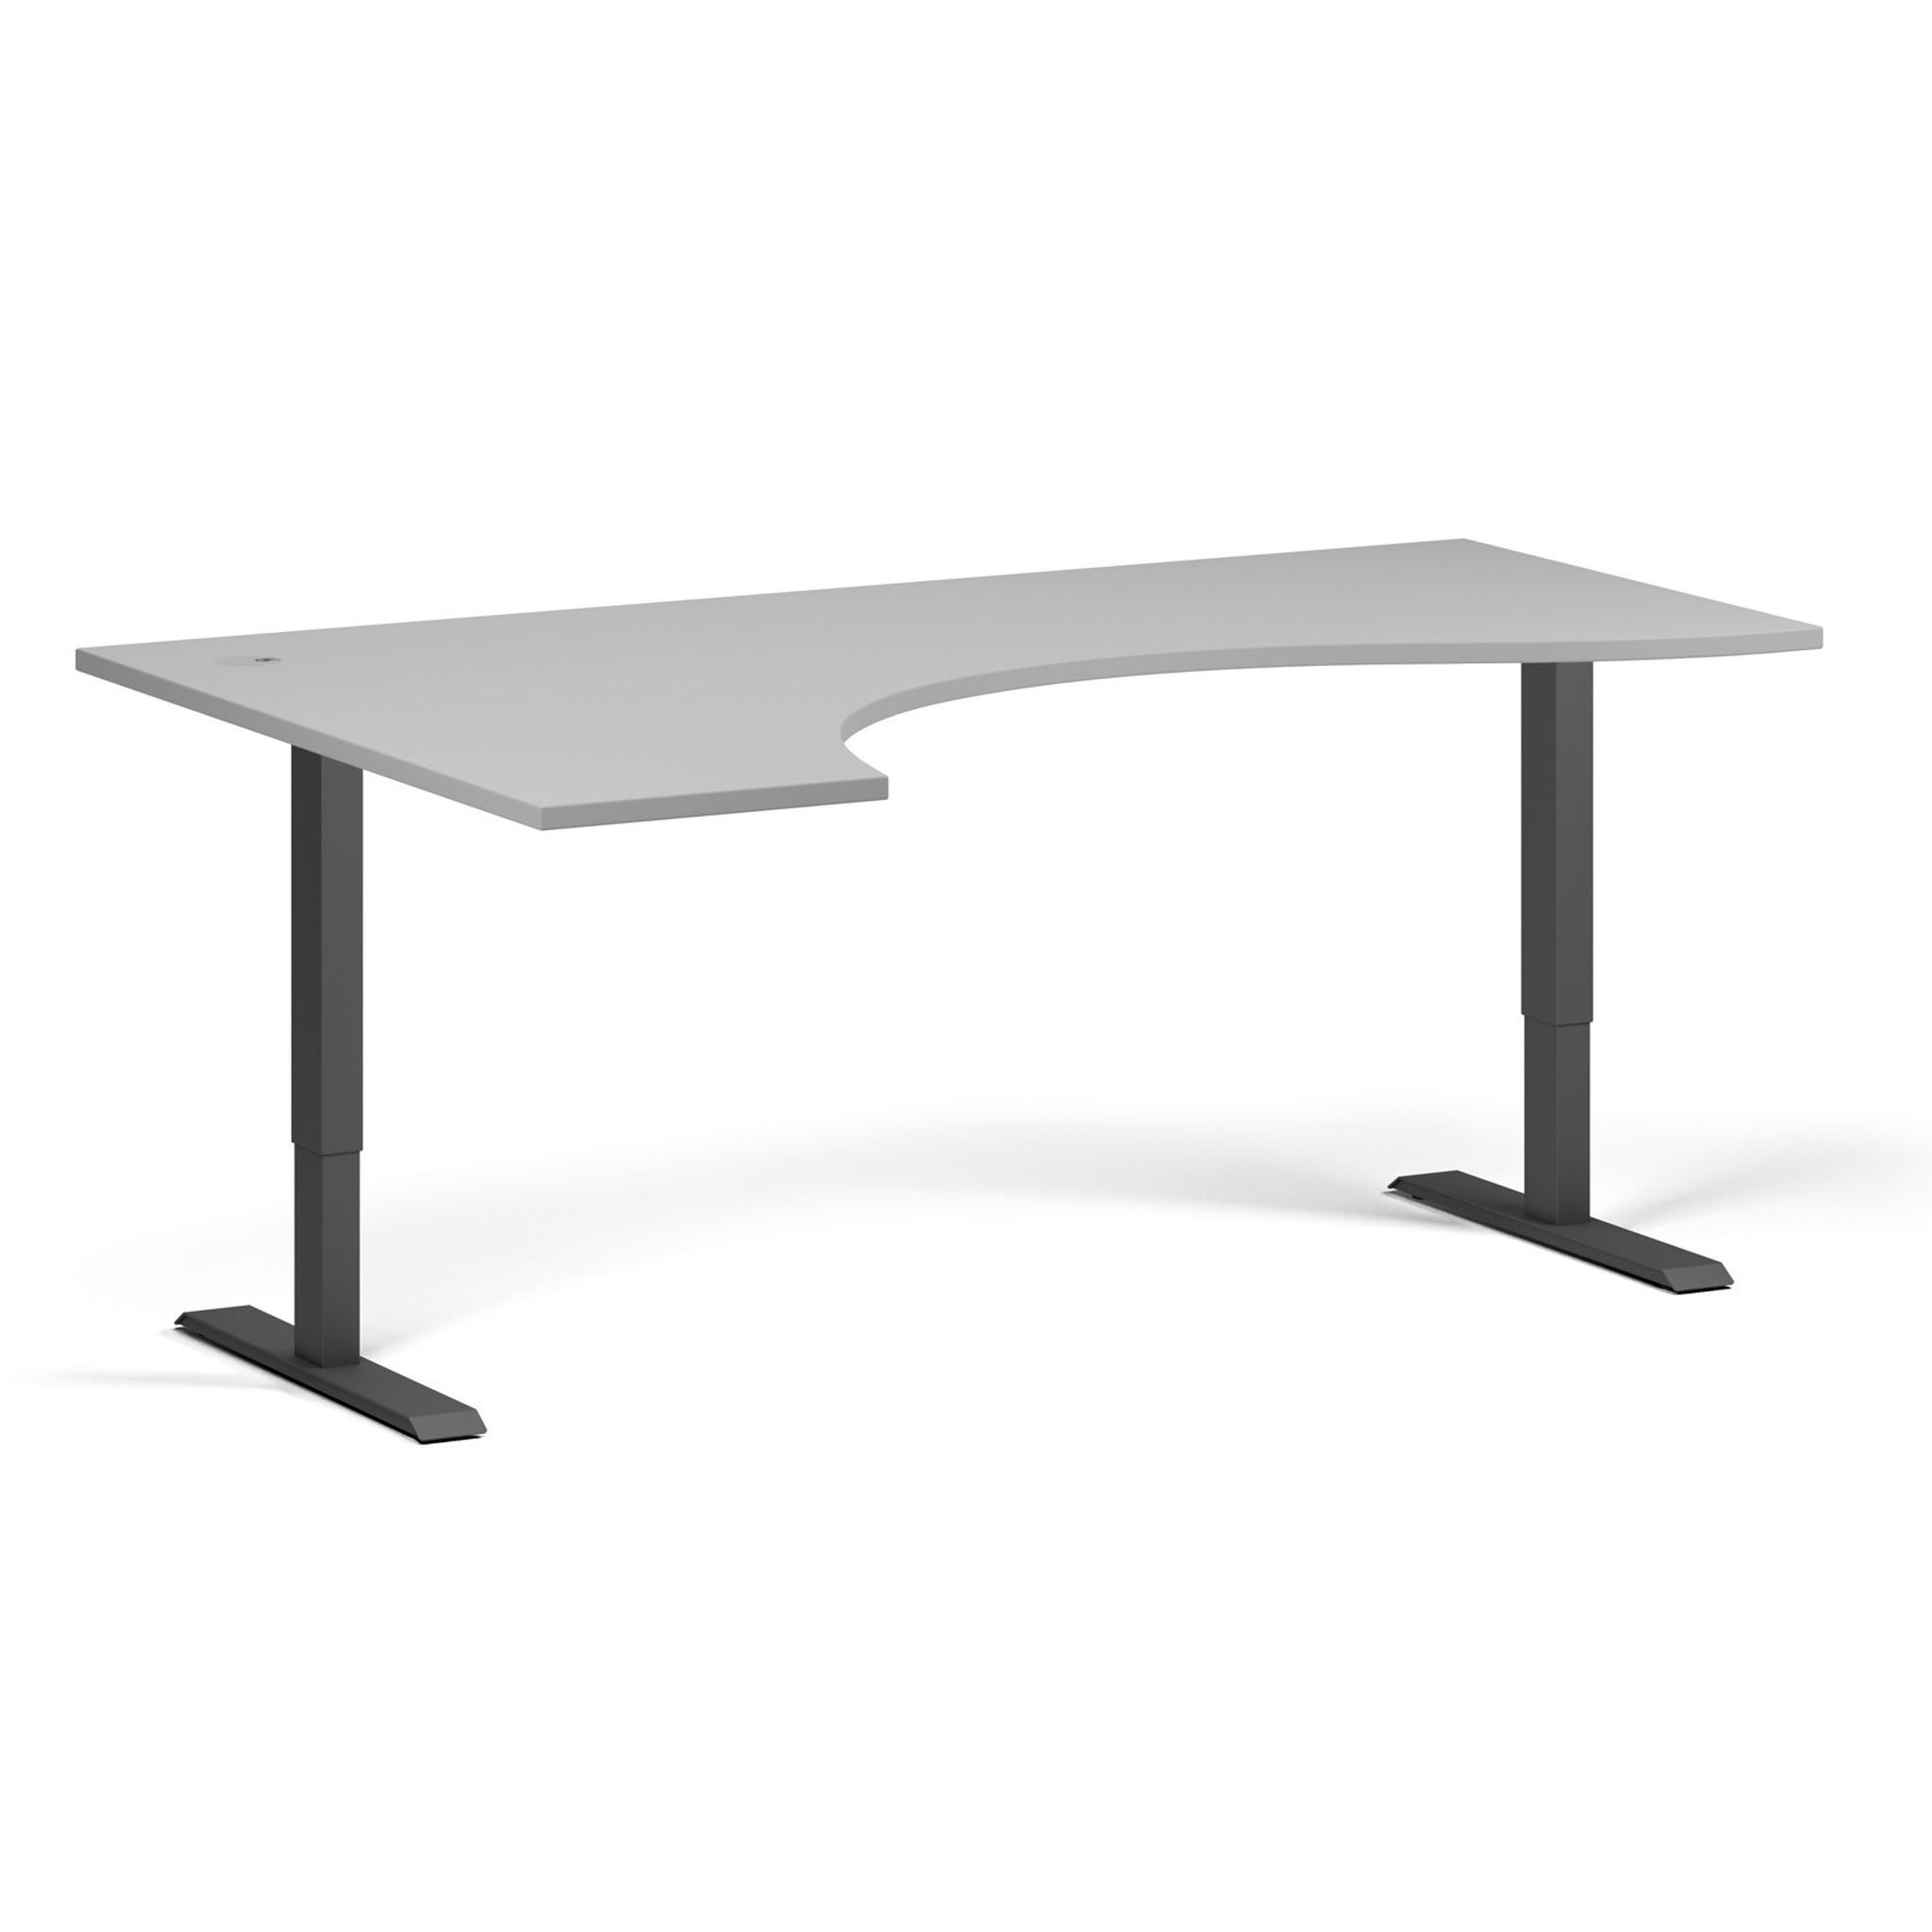 Výškově nastavitelný stůl, 2 motory, 745-1215 mm, ergonomický levý, deska 1800x1200 mm, černá podnož, šedá